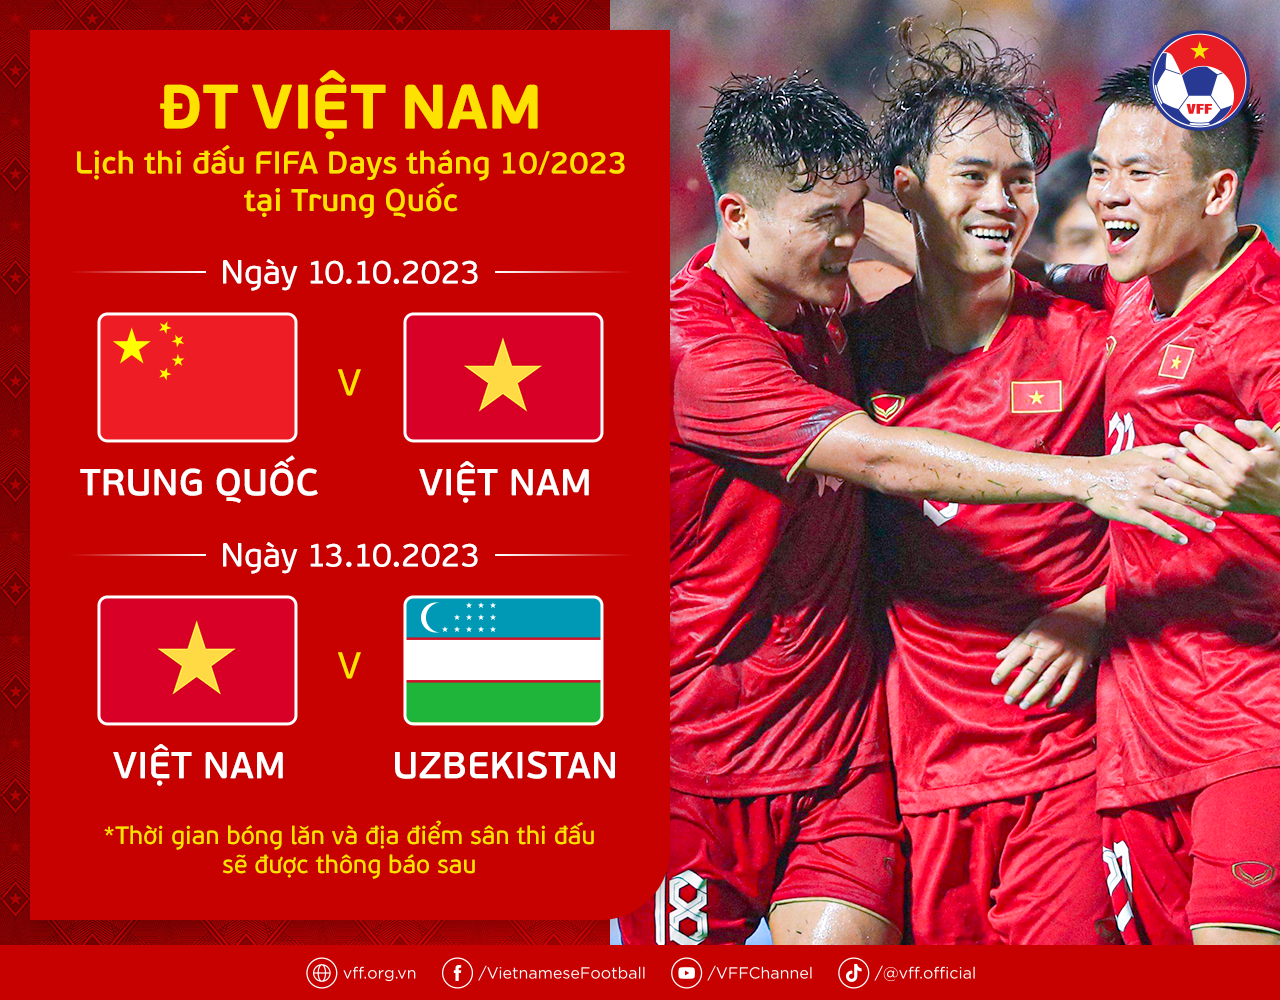 Bóng đá - Lịch thi đấu của ĐT Việt Nam tại Trung Quốc dịp FIFA Days tháng 10/2023